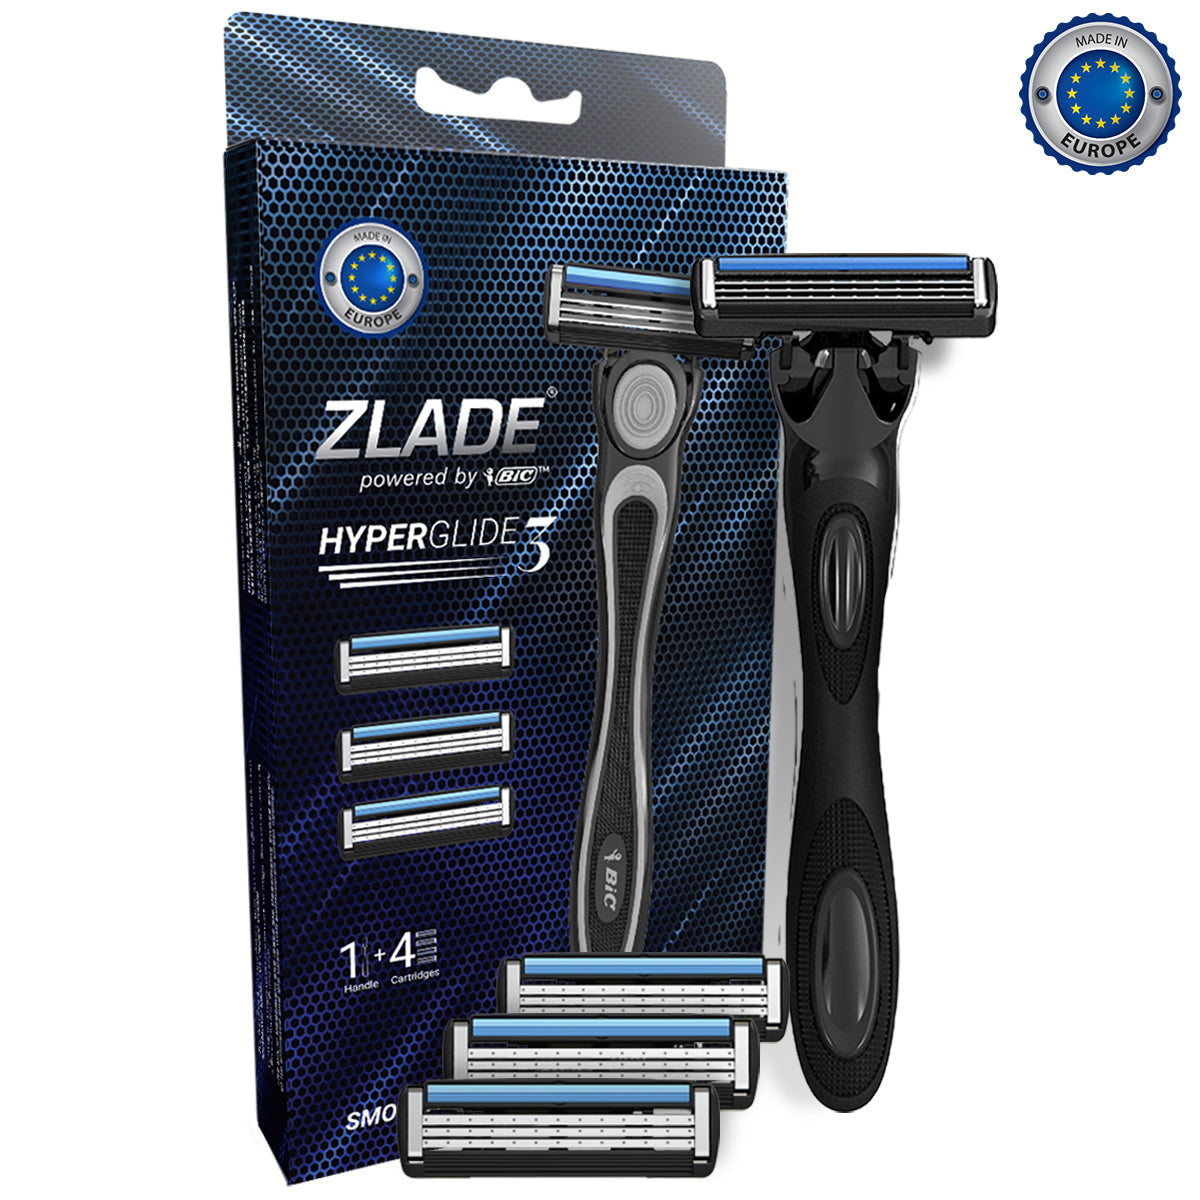 Zlade HyperGlide3 Advanced Shaving System for Men - 1 Razor Handle + 4 Cartridges